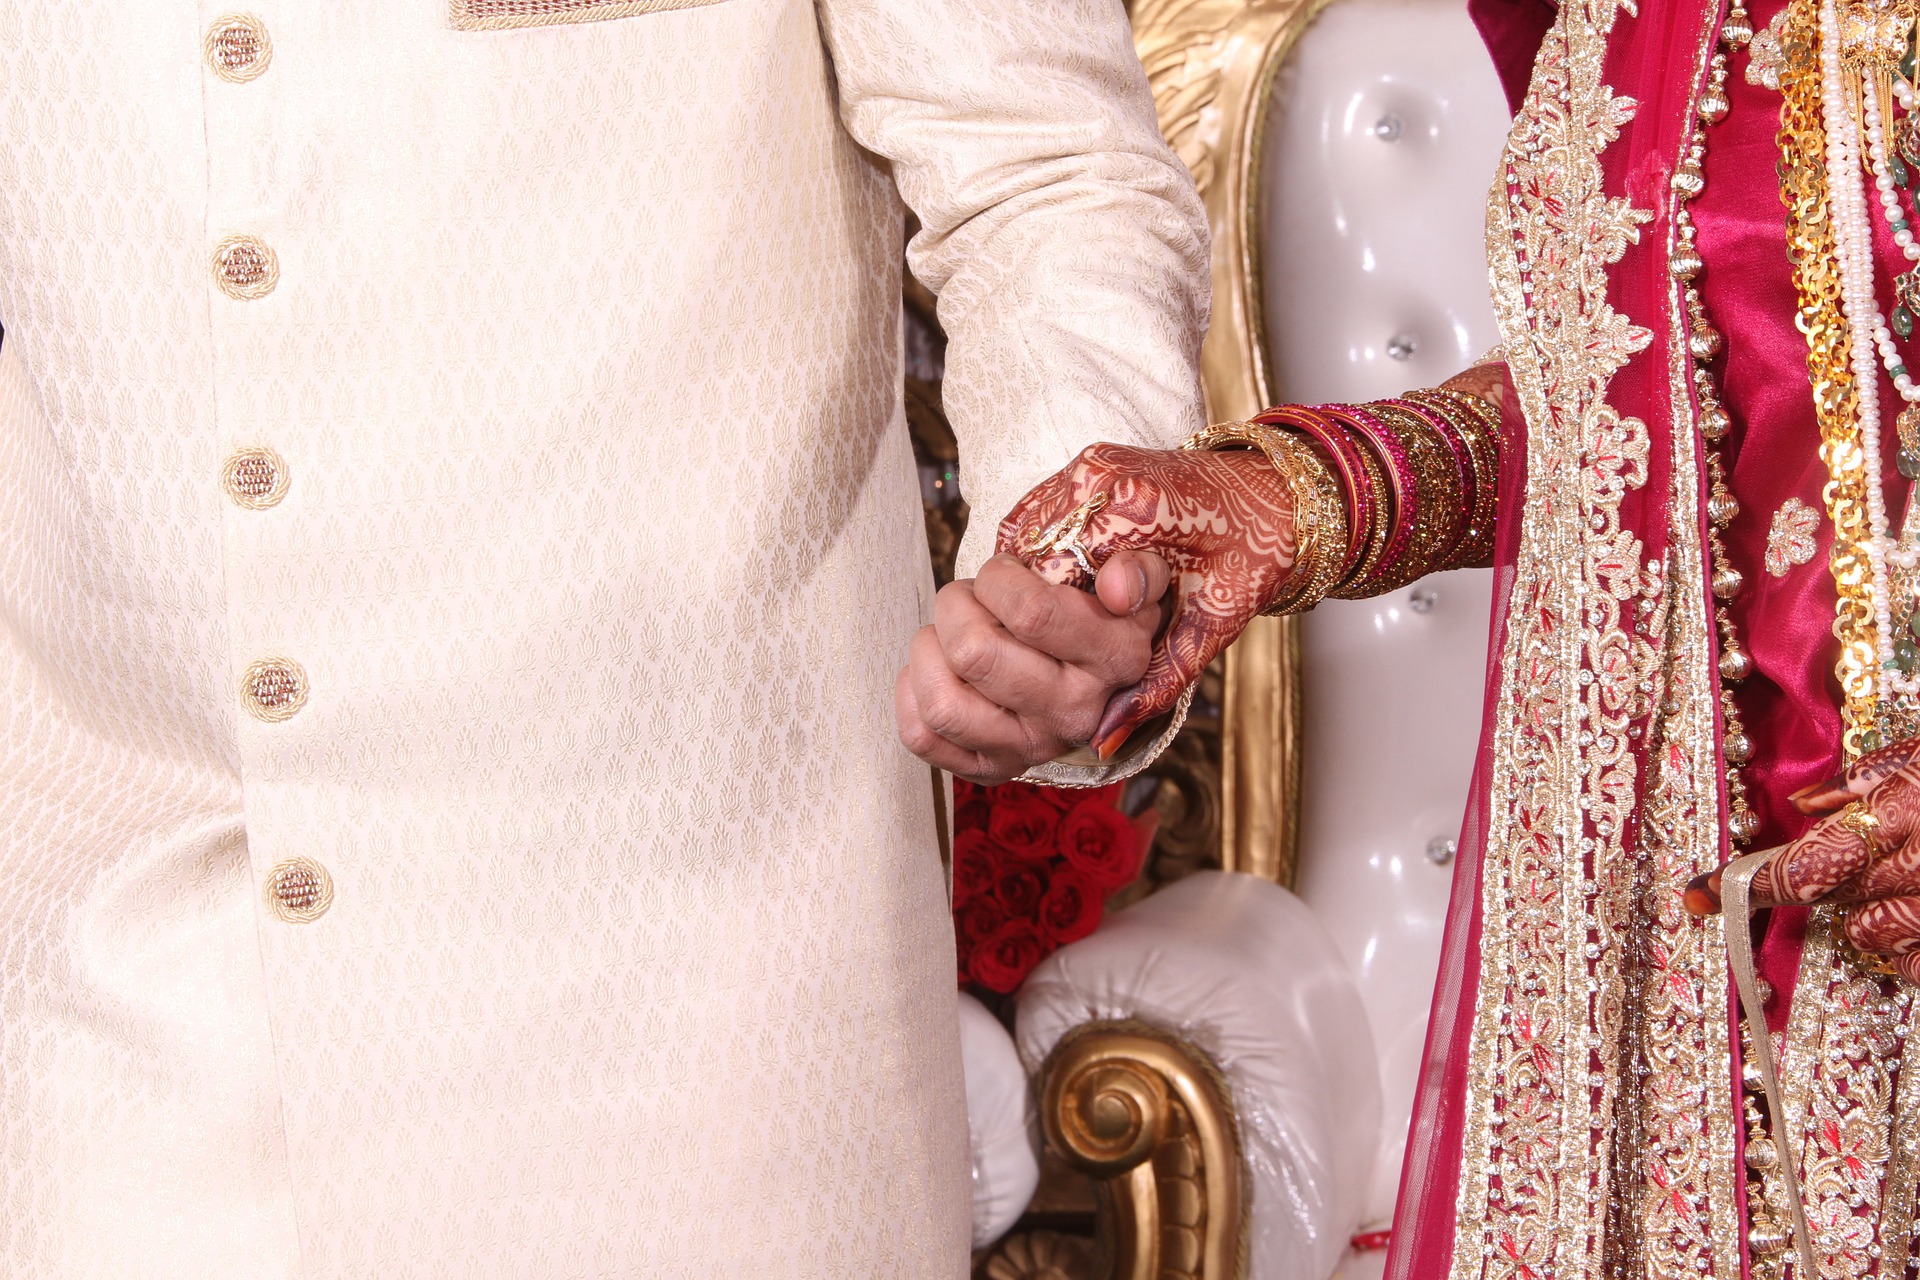 Dr. Prerna Kohli, India's Top Psychologist explains making arranged marriages work